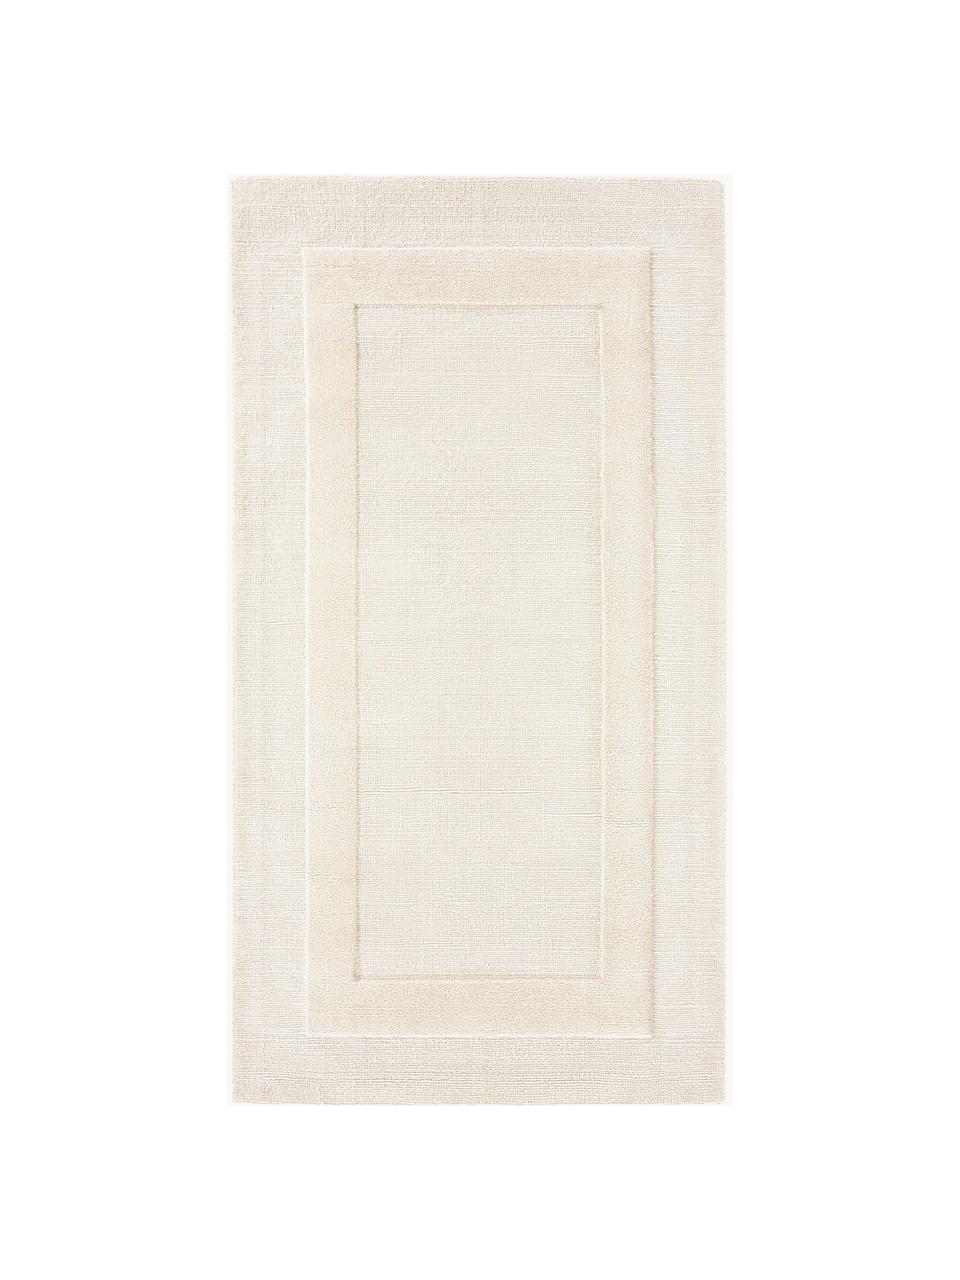 Tappeto in cotone tessuto a mano con motivo in rilievo Dania, 100% cotone certificato GRS, Bianco crema, Larg. 200 x Lung. 300 cm (taglia L)